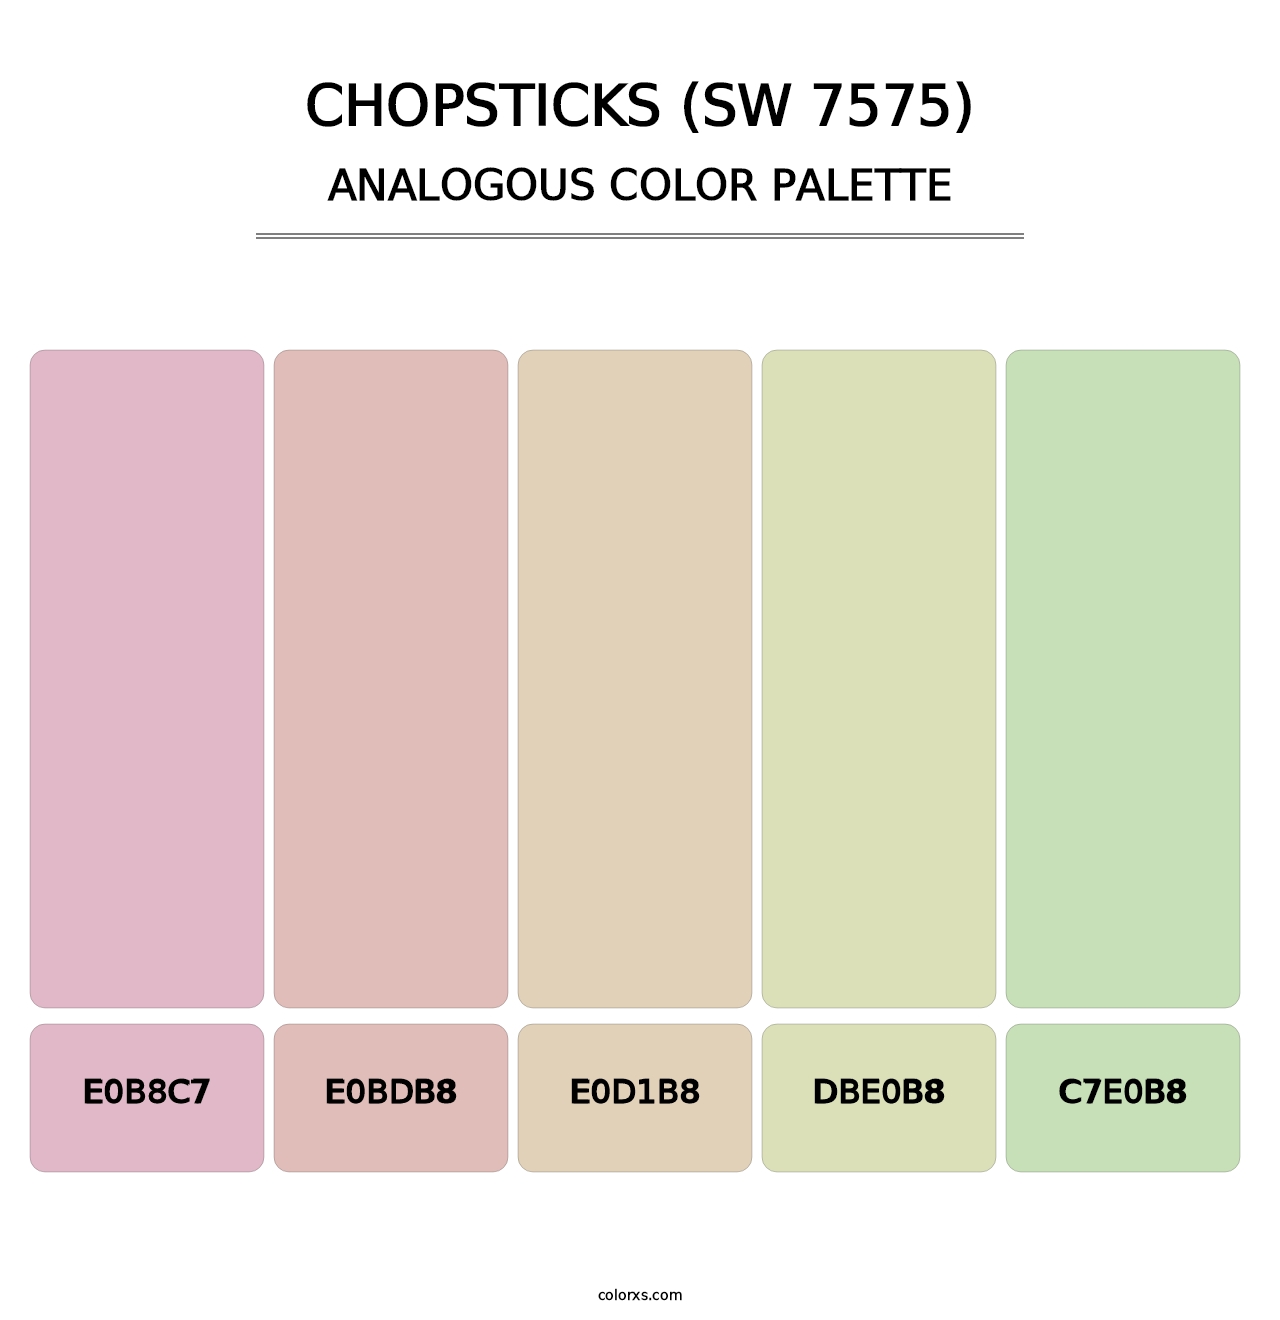 Chopsticks (SW 7575) - Analogous Color Palette